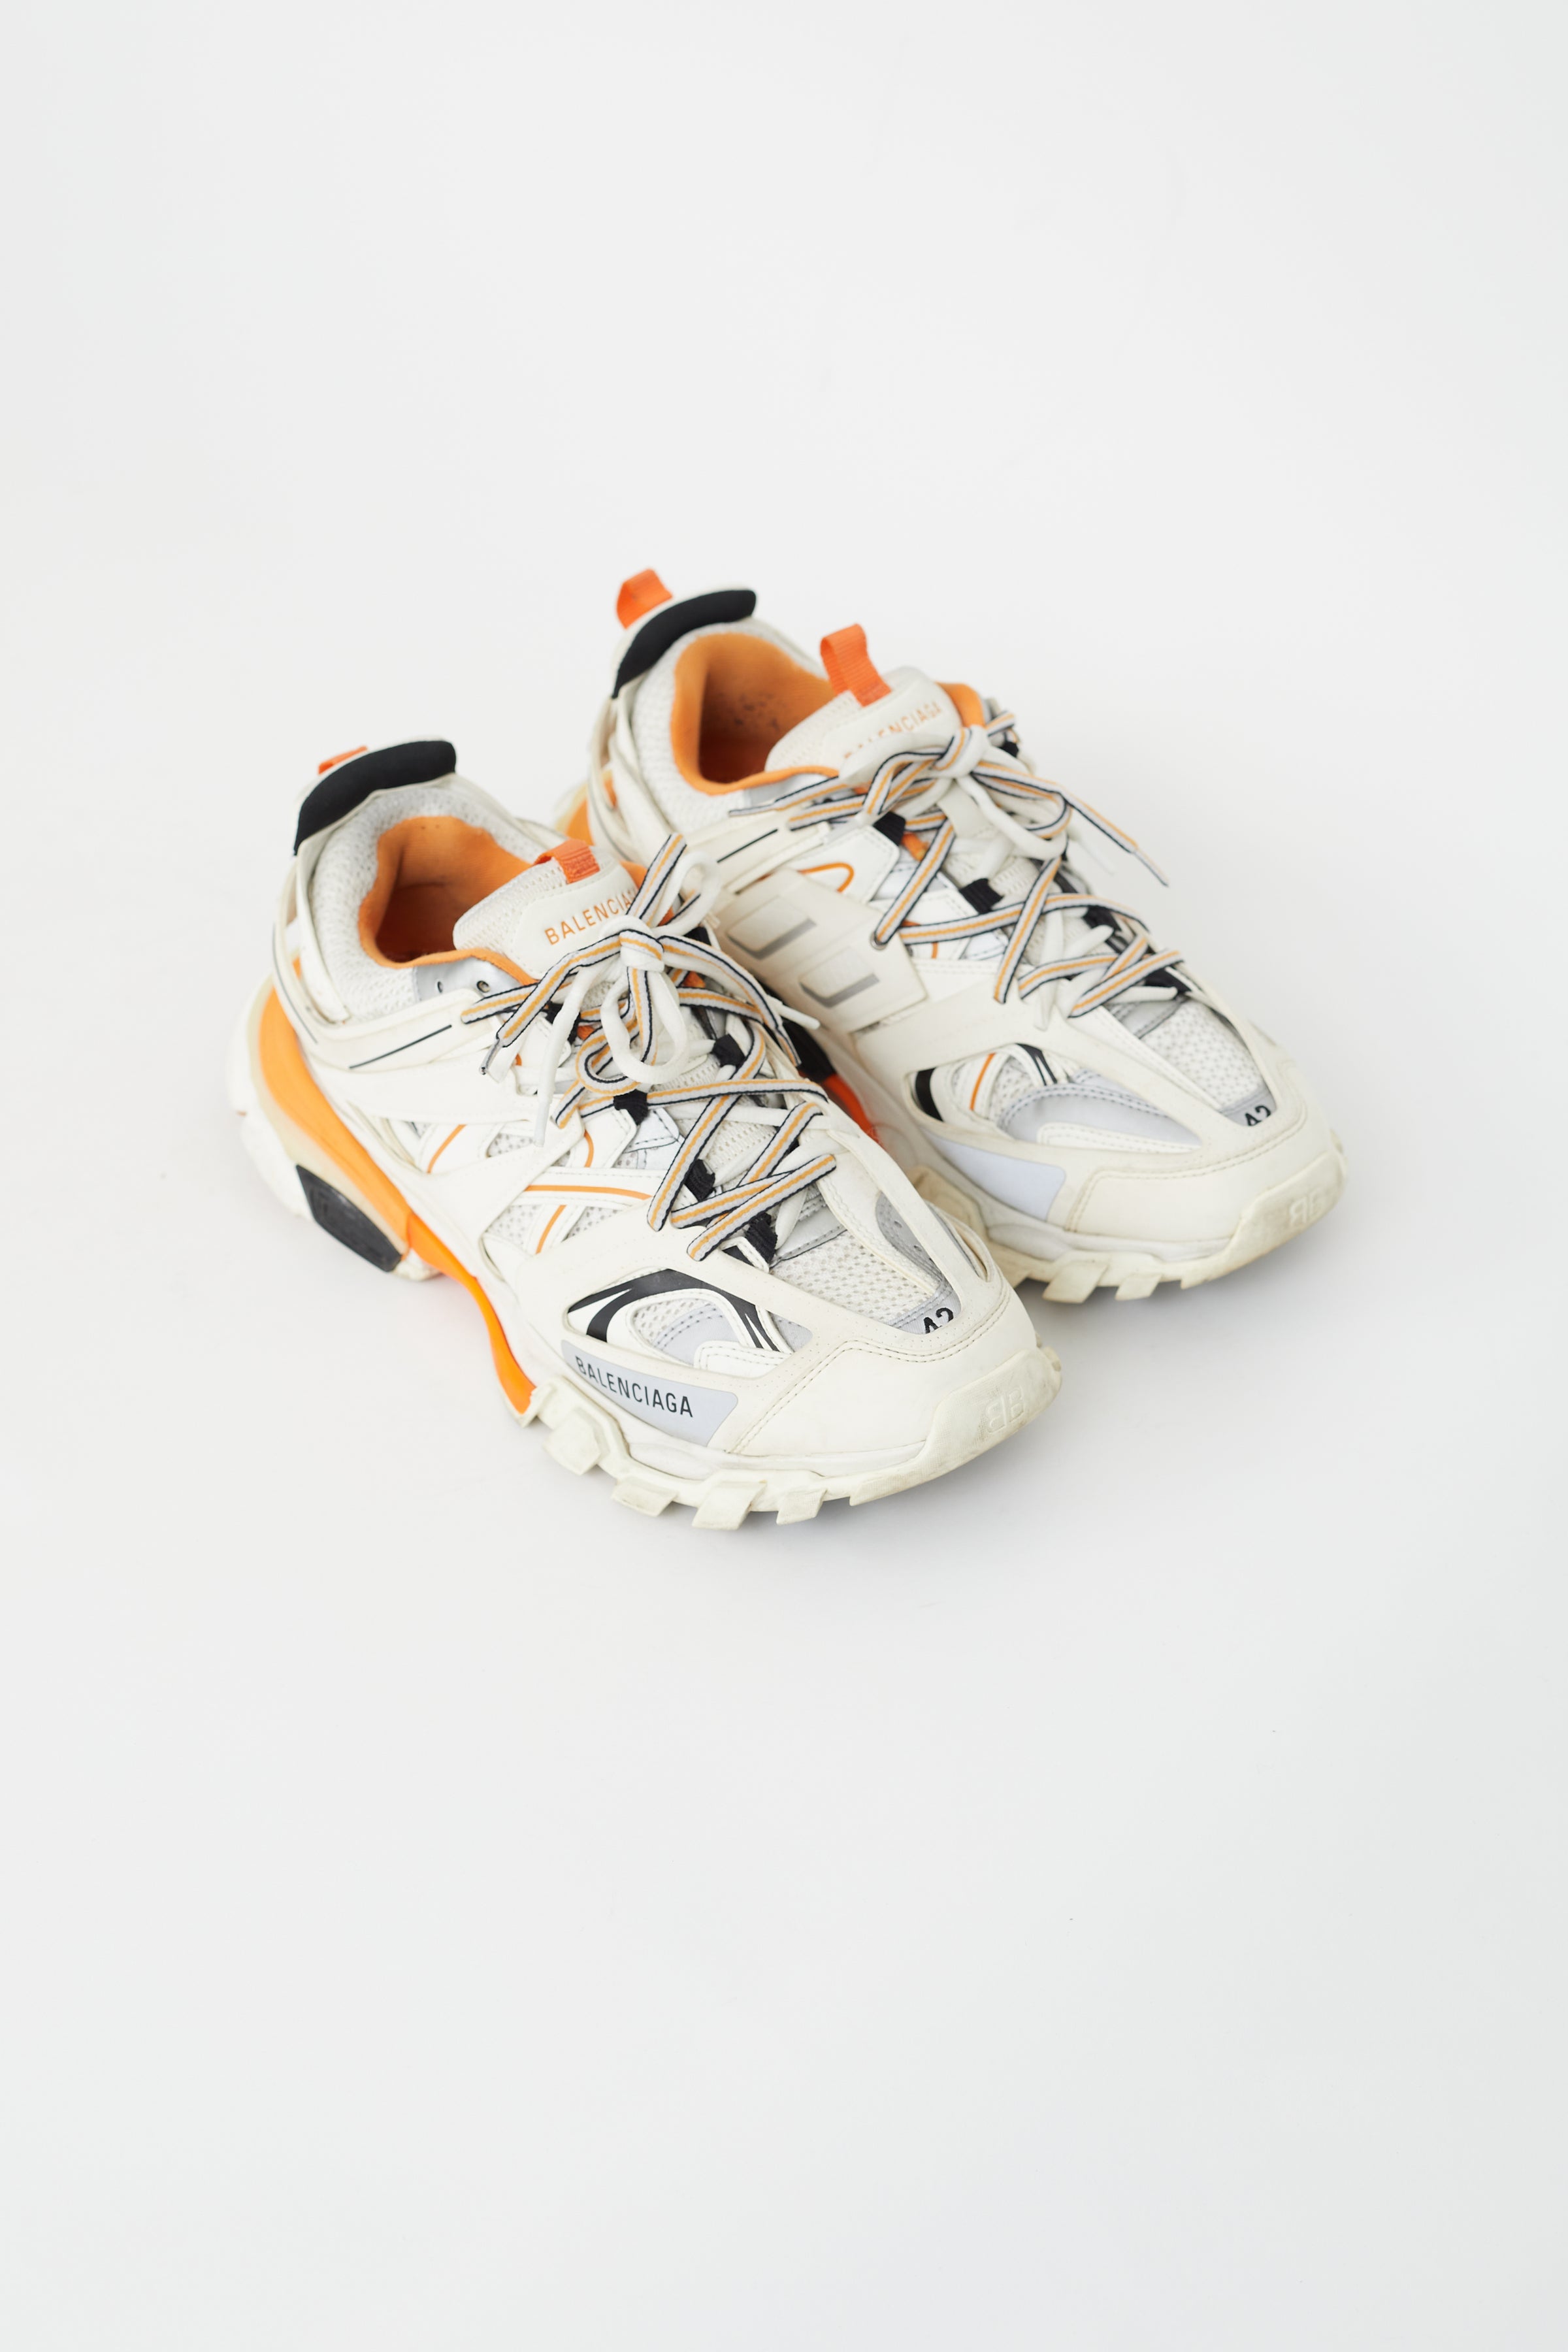 Onkel eller Mister lommeregner Give Balenciaga // White & Orange Leather Track Sneaker – VSP Consignment